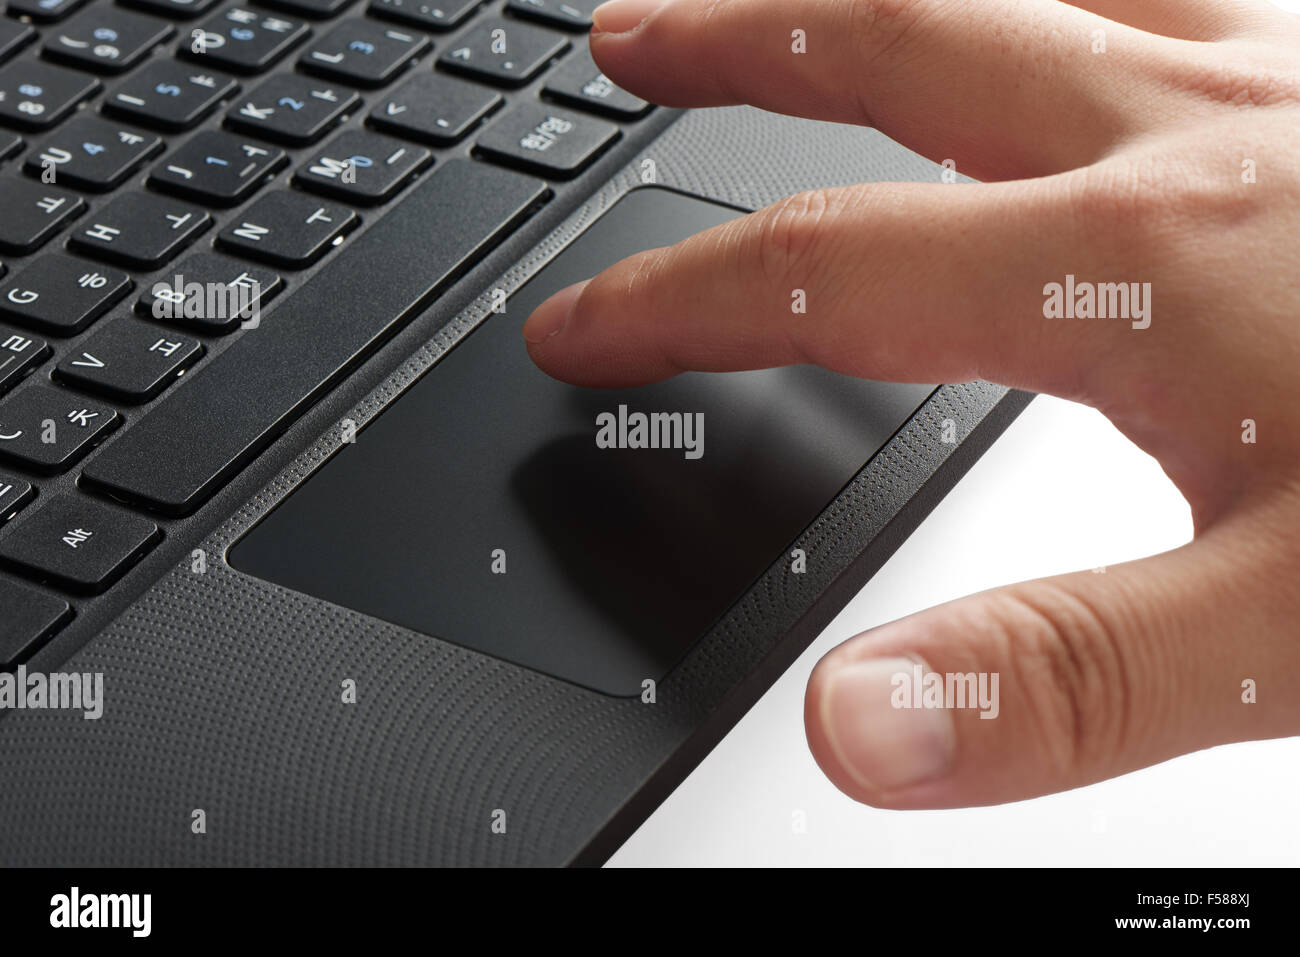 Gros plan du clavier et pavé tactile d'un ordinateur portable avec l'index de toucher le pavé tactile Banque D'Images